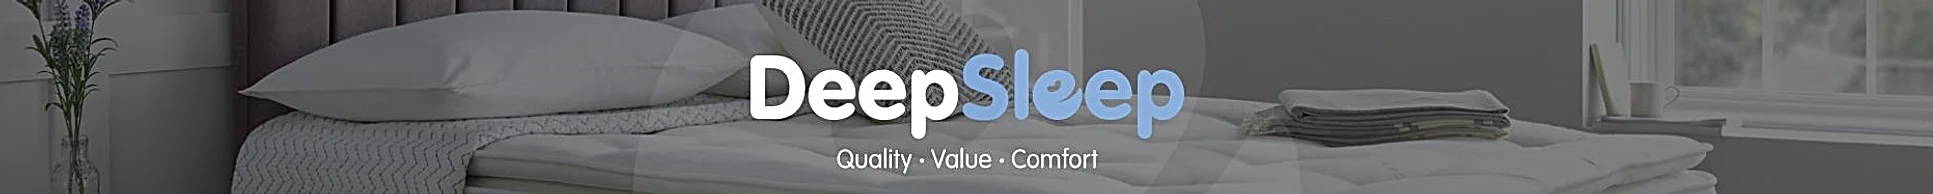 DeepSleep logo